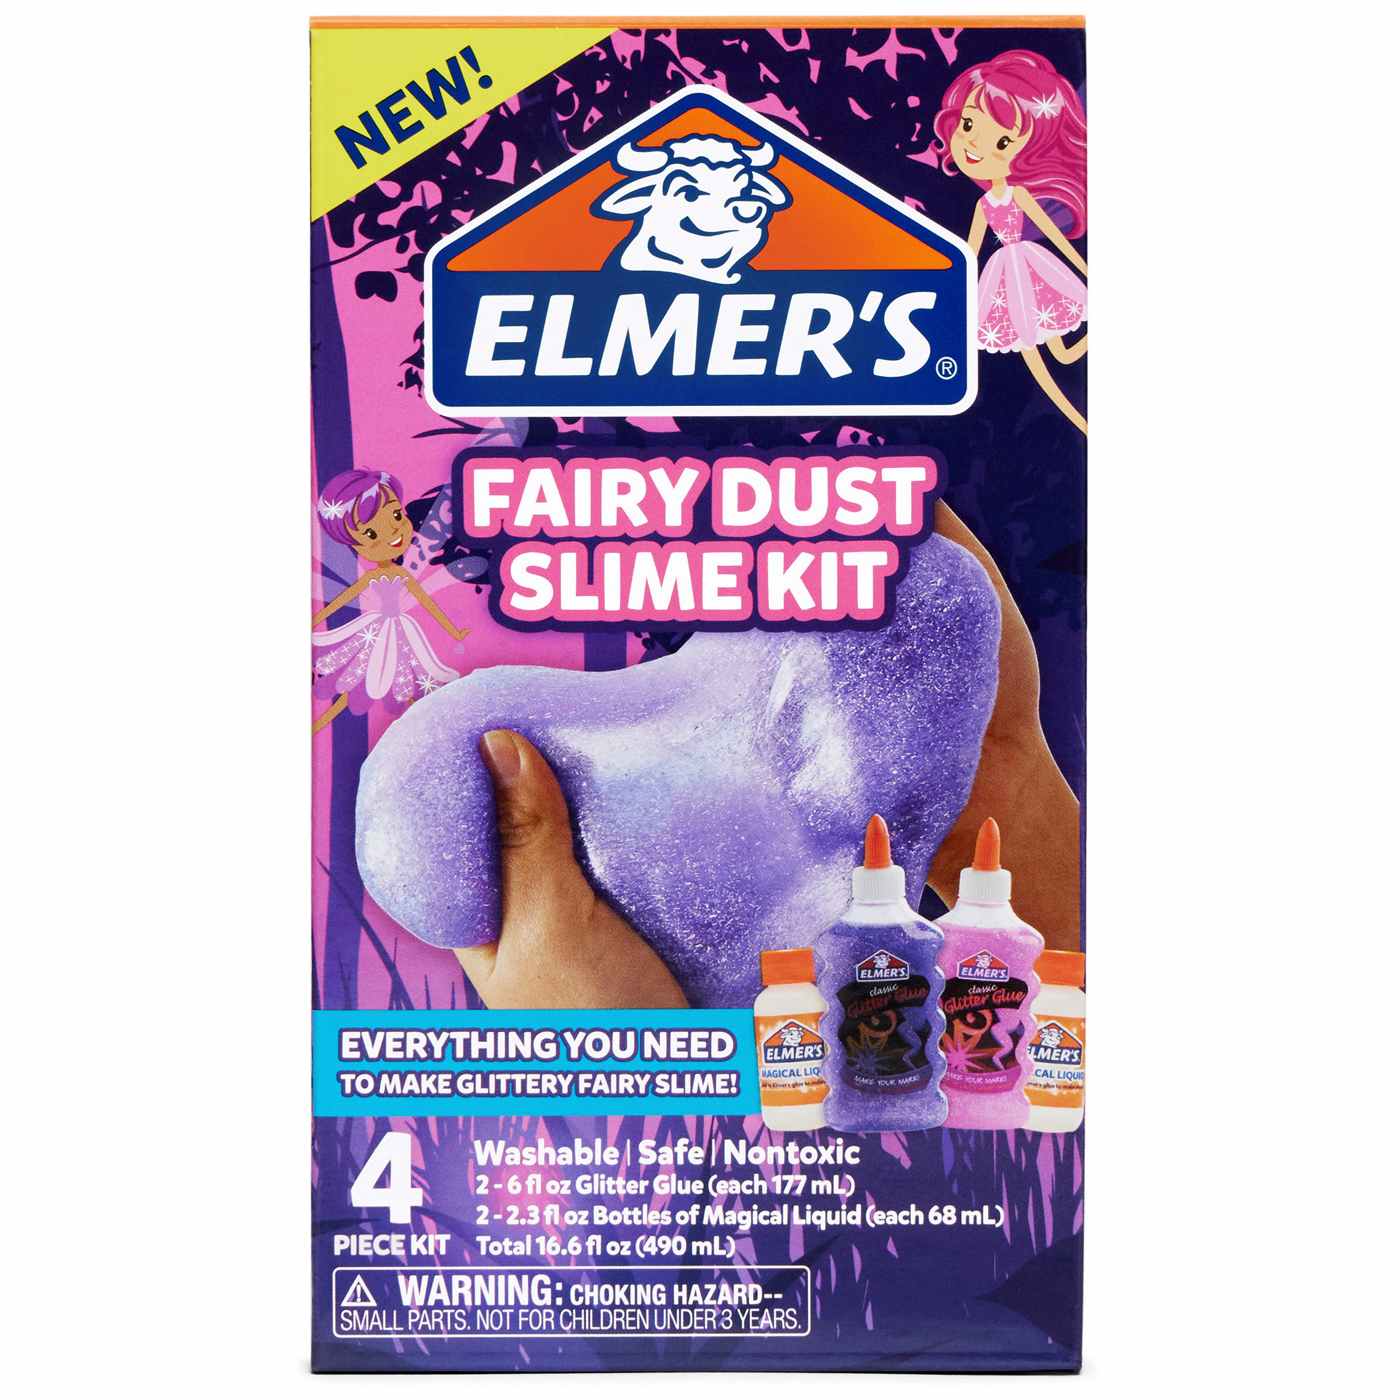 Elmer's Fairy Dust Slime Kit; image 1 of 2